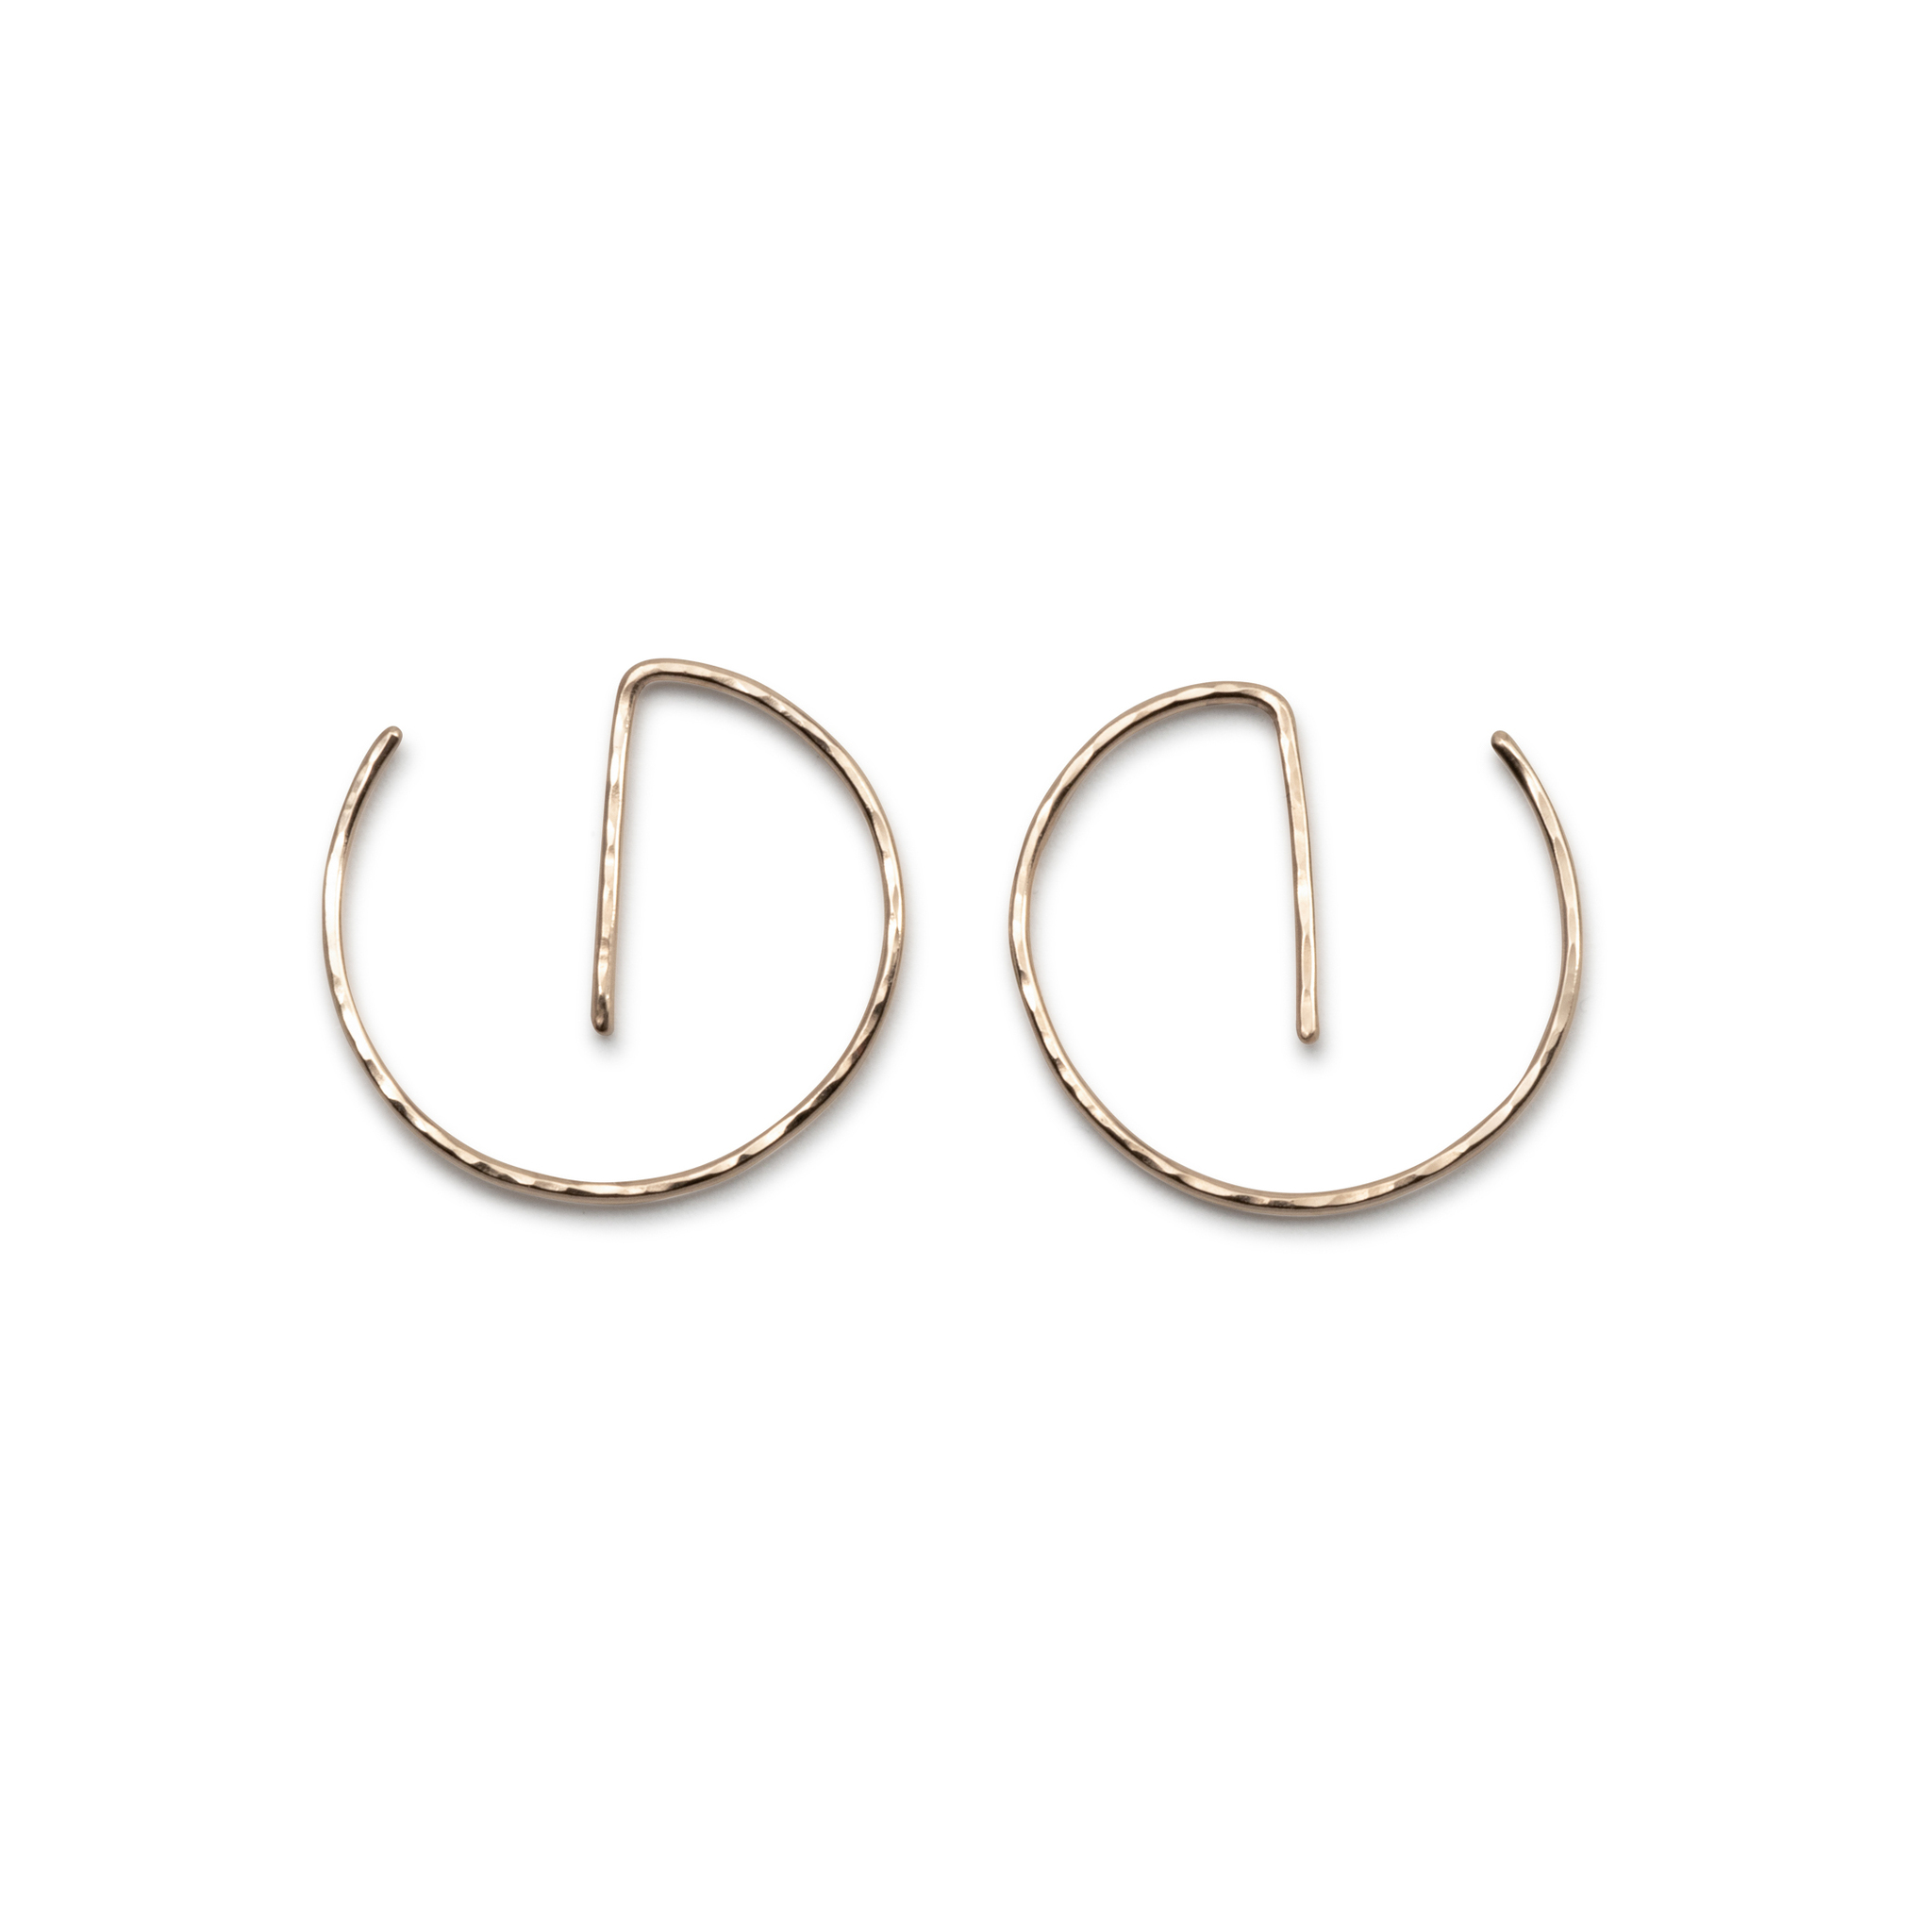 Handmade Hoops Earrings Recycled Gold